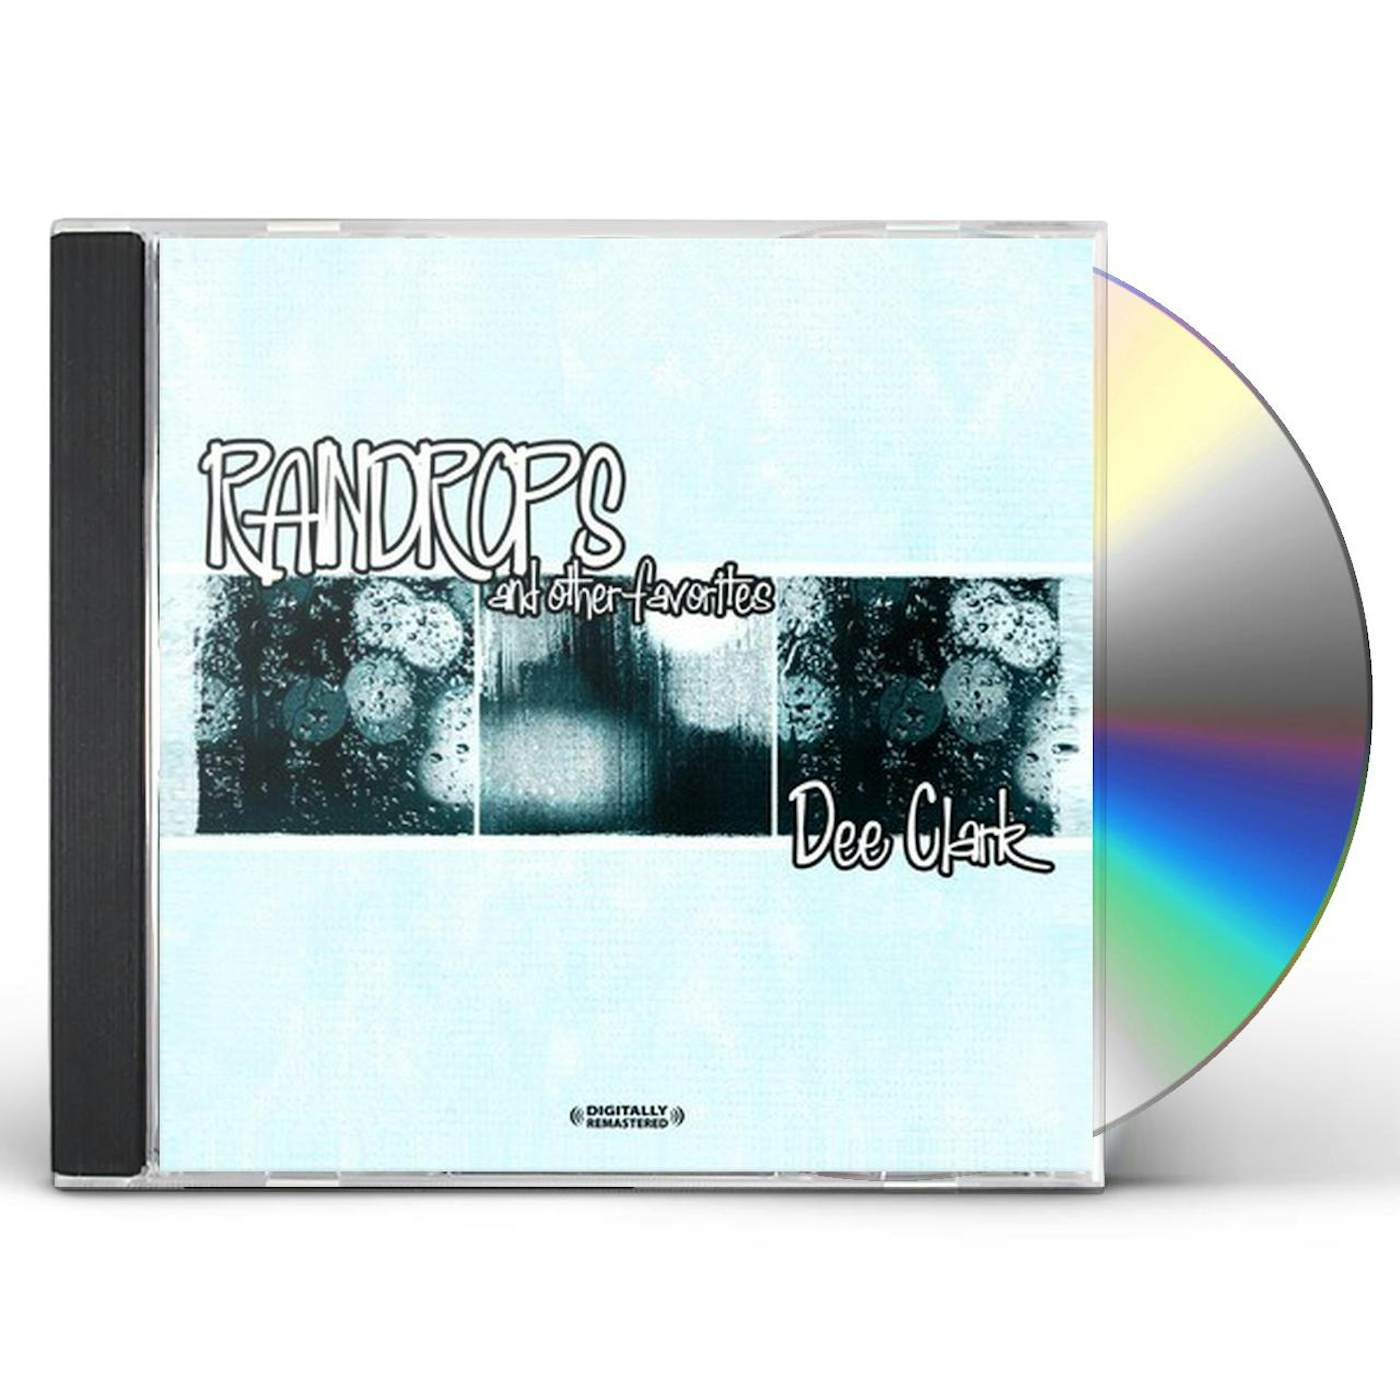 Dee Clark RAINDROPS & OTHER FAVORITES CD